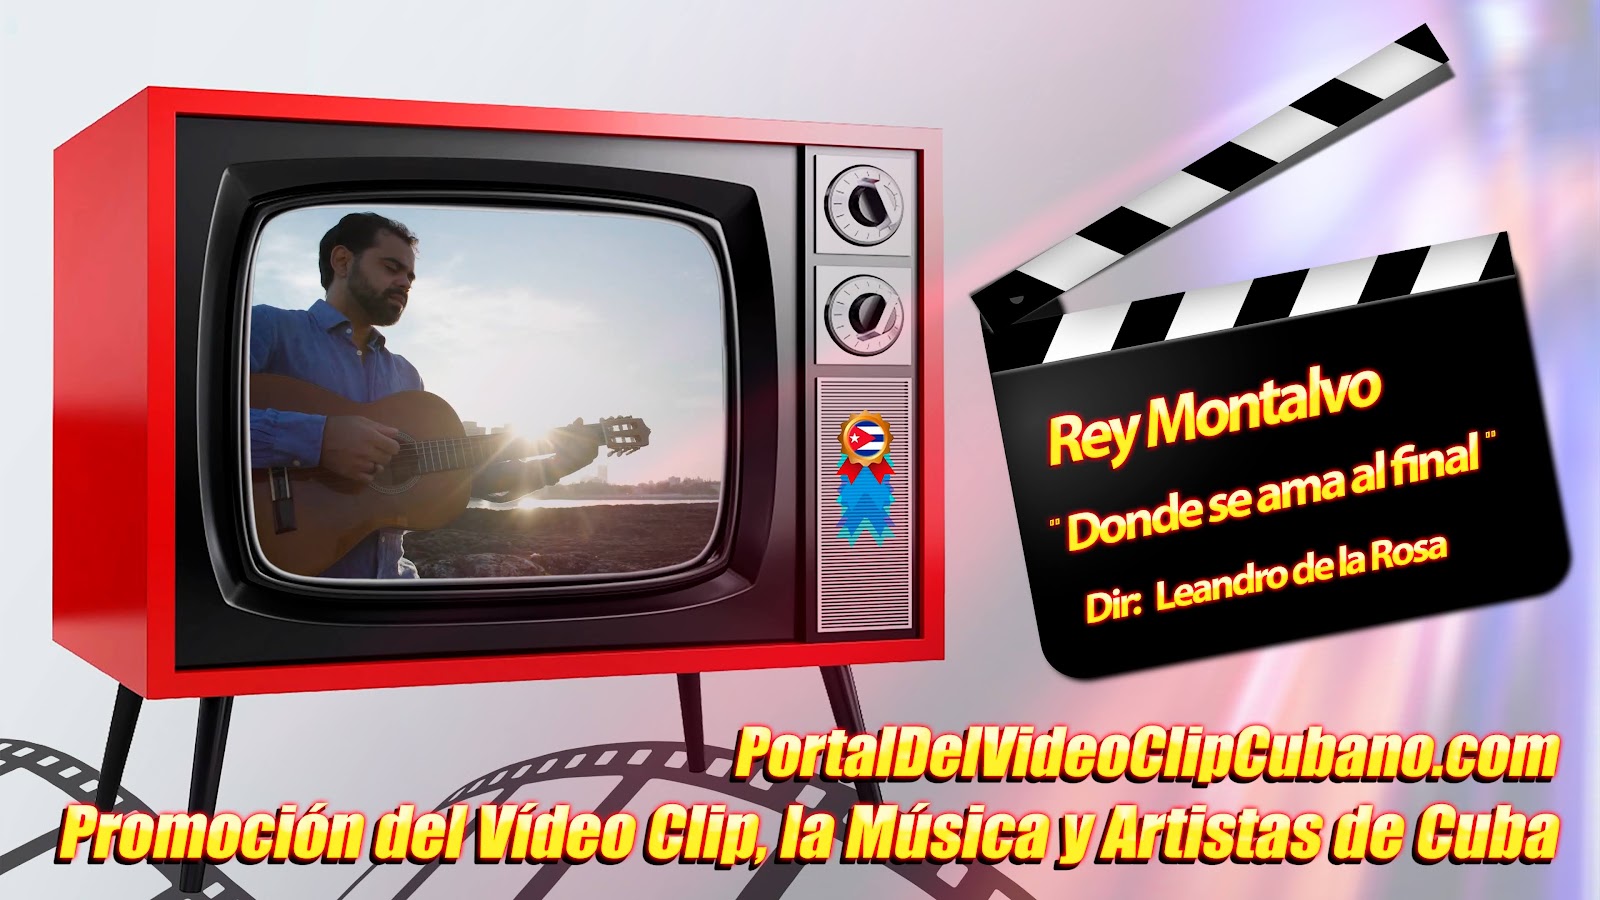 Rey Montalvo - ¨Donde se ama al final¨ - Director: Leandro de la Rosa. Homenaje a José Martí. Portal Del Vídeo Clip Cubano. Música Cubana. CUBA.